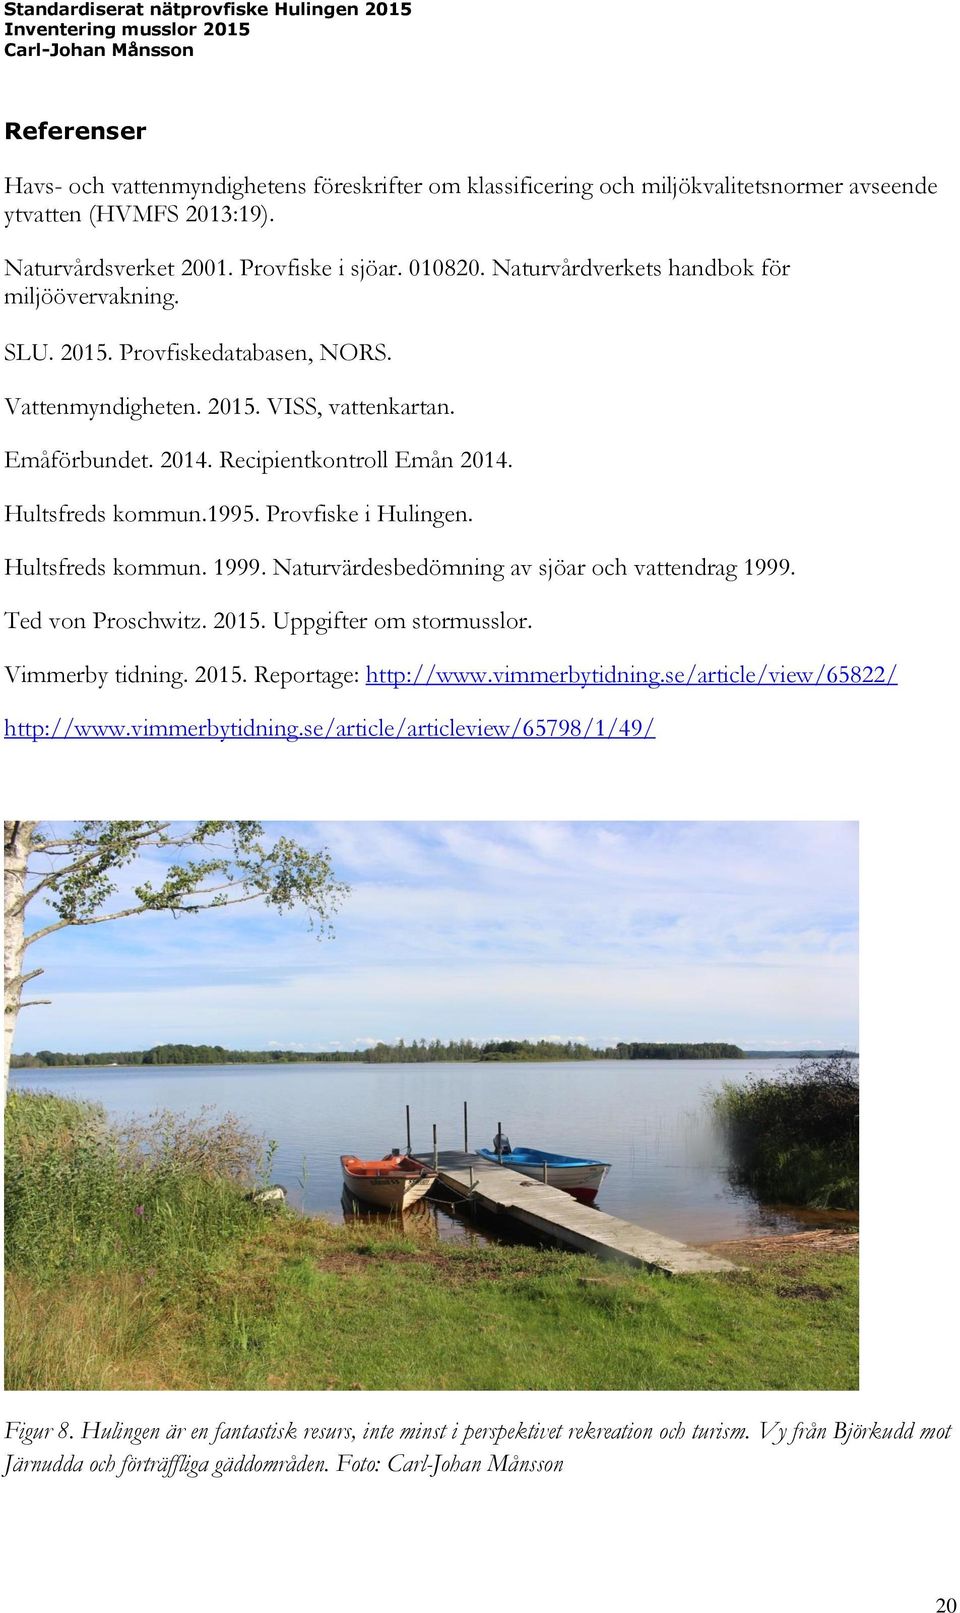 1995. Provfiske i Hulingen. Hultsfreds kommun. 1999. Naturvärdesbedömning av sjöar och vattendrag 1999. Ted von Proschwitz. 2015. Uppgifter om stormusslor. Vimmerby tidning. 2015. Reportage: http://www.